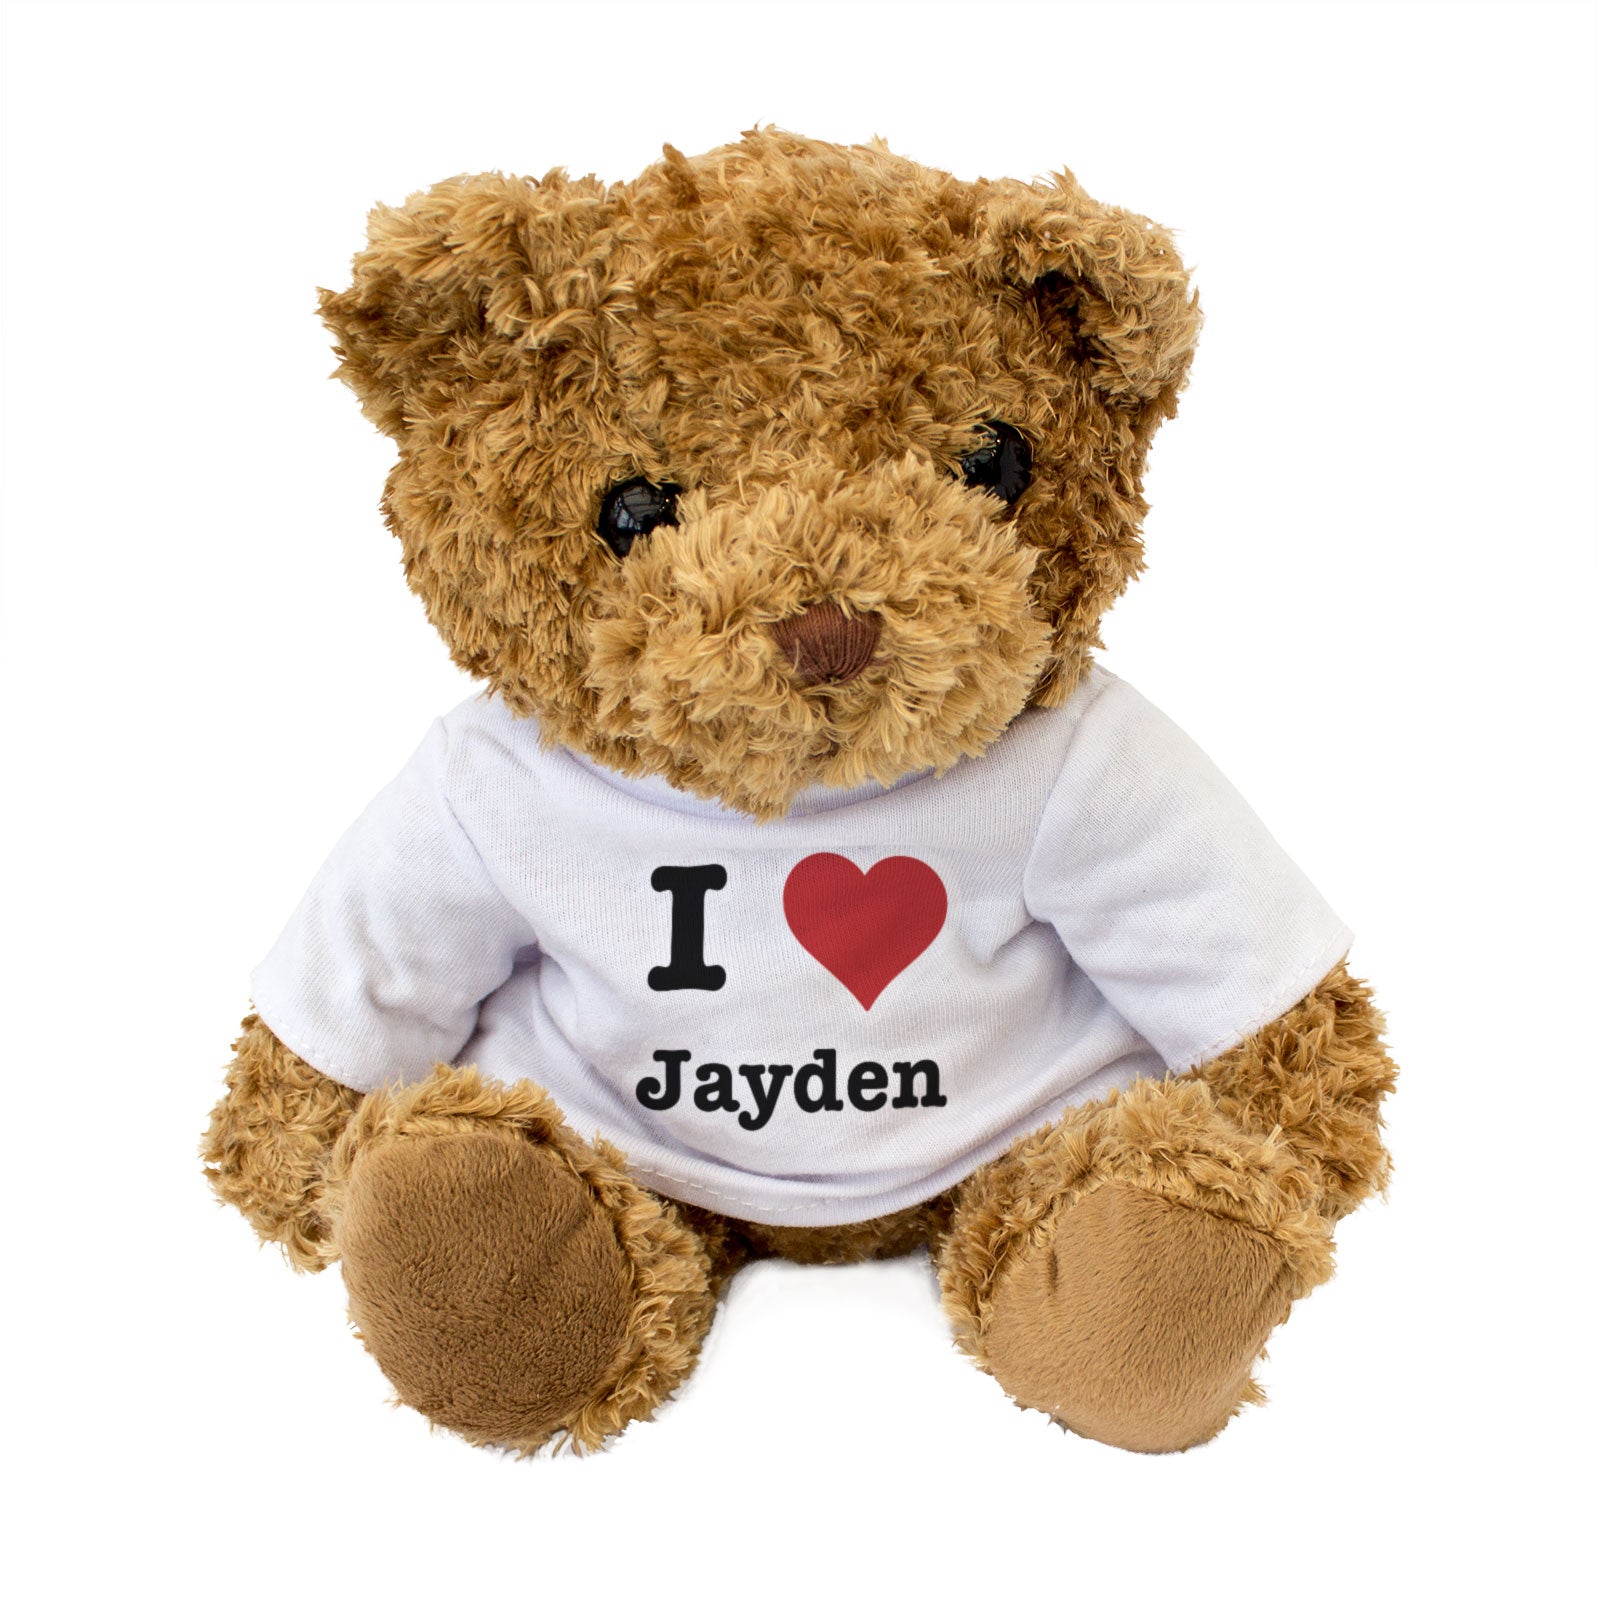 I Love Jayden - Teddy Bear